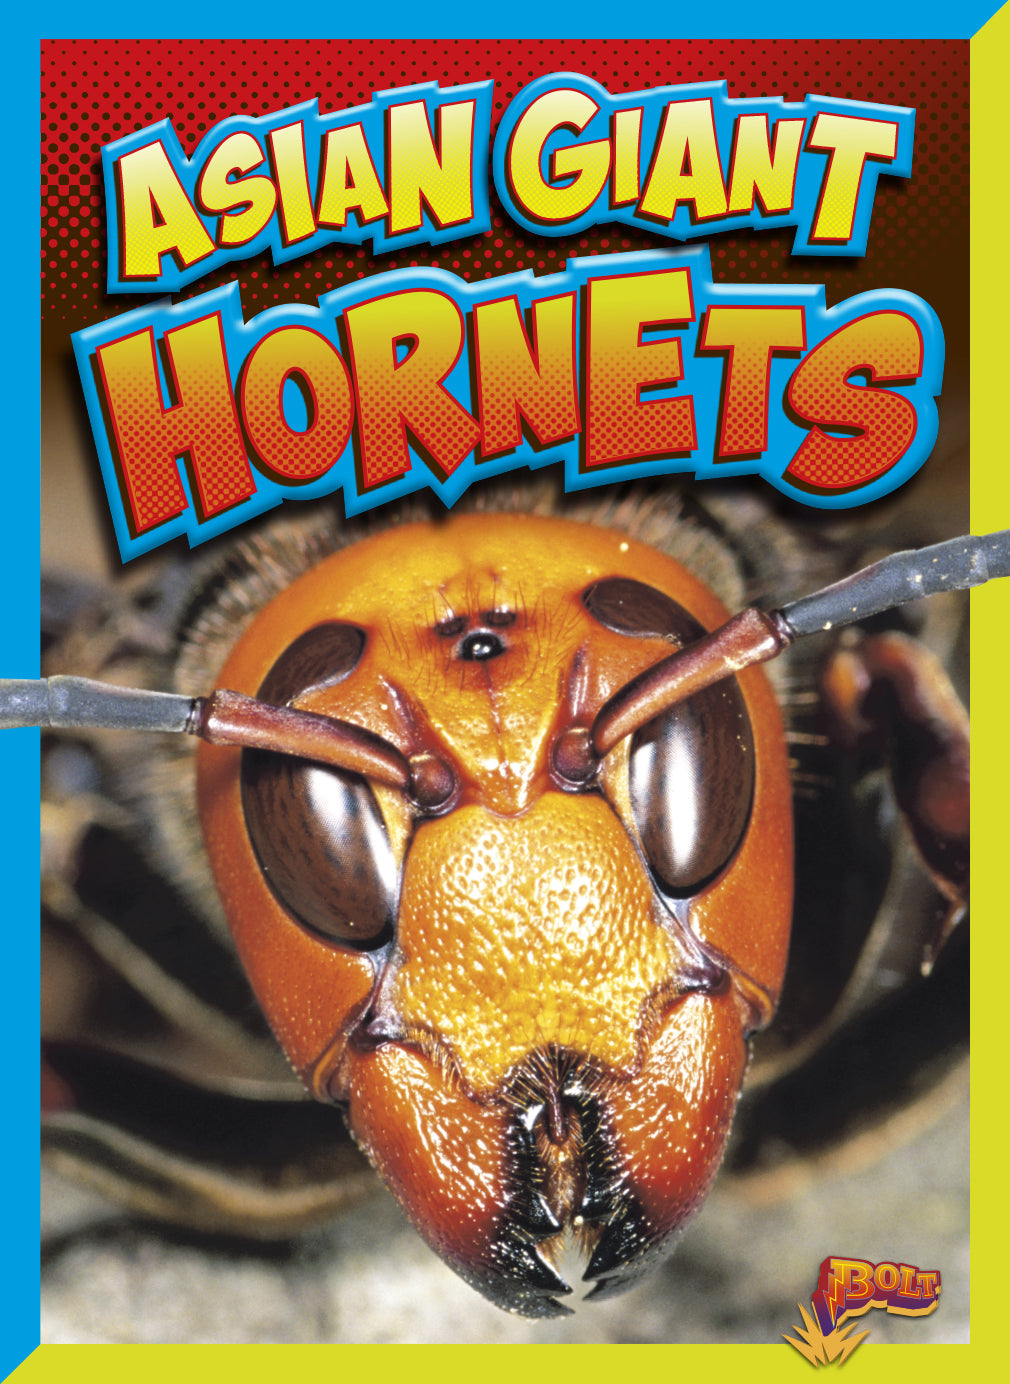 Dangerous Bugs: Asian Giant Hornets